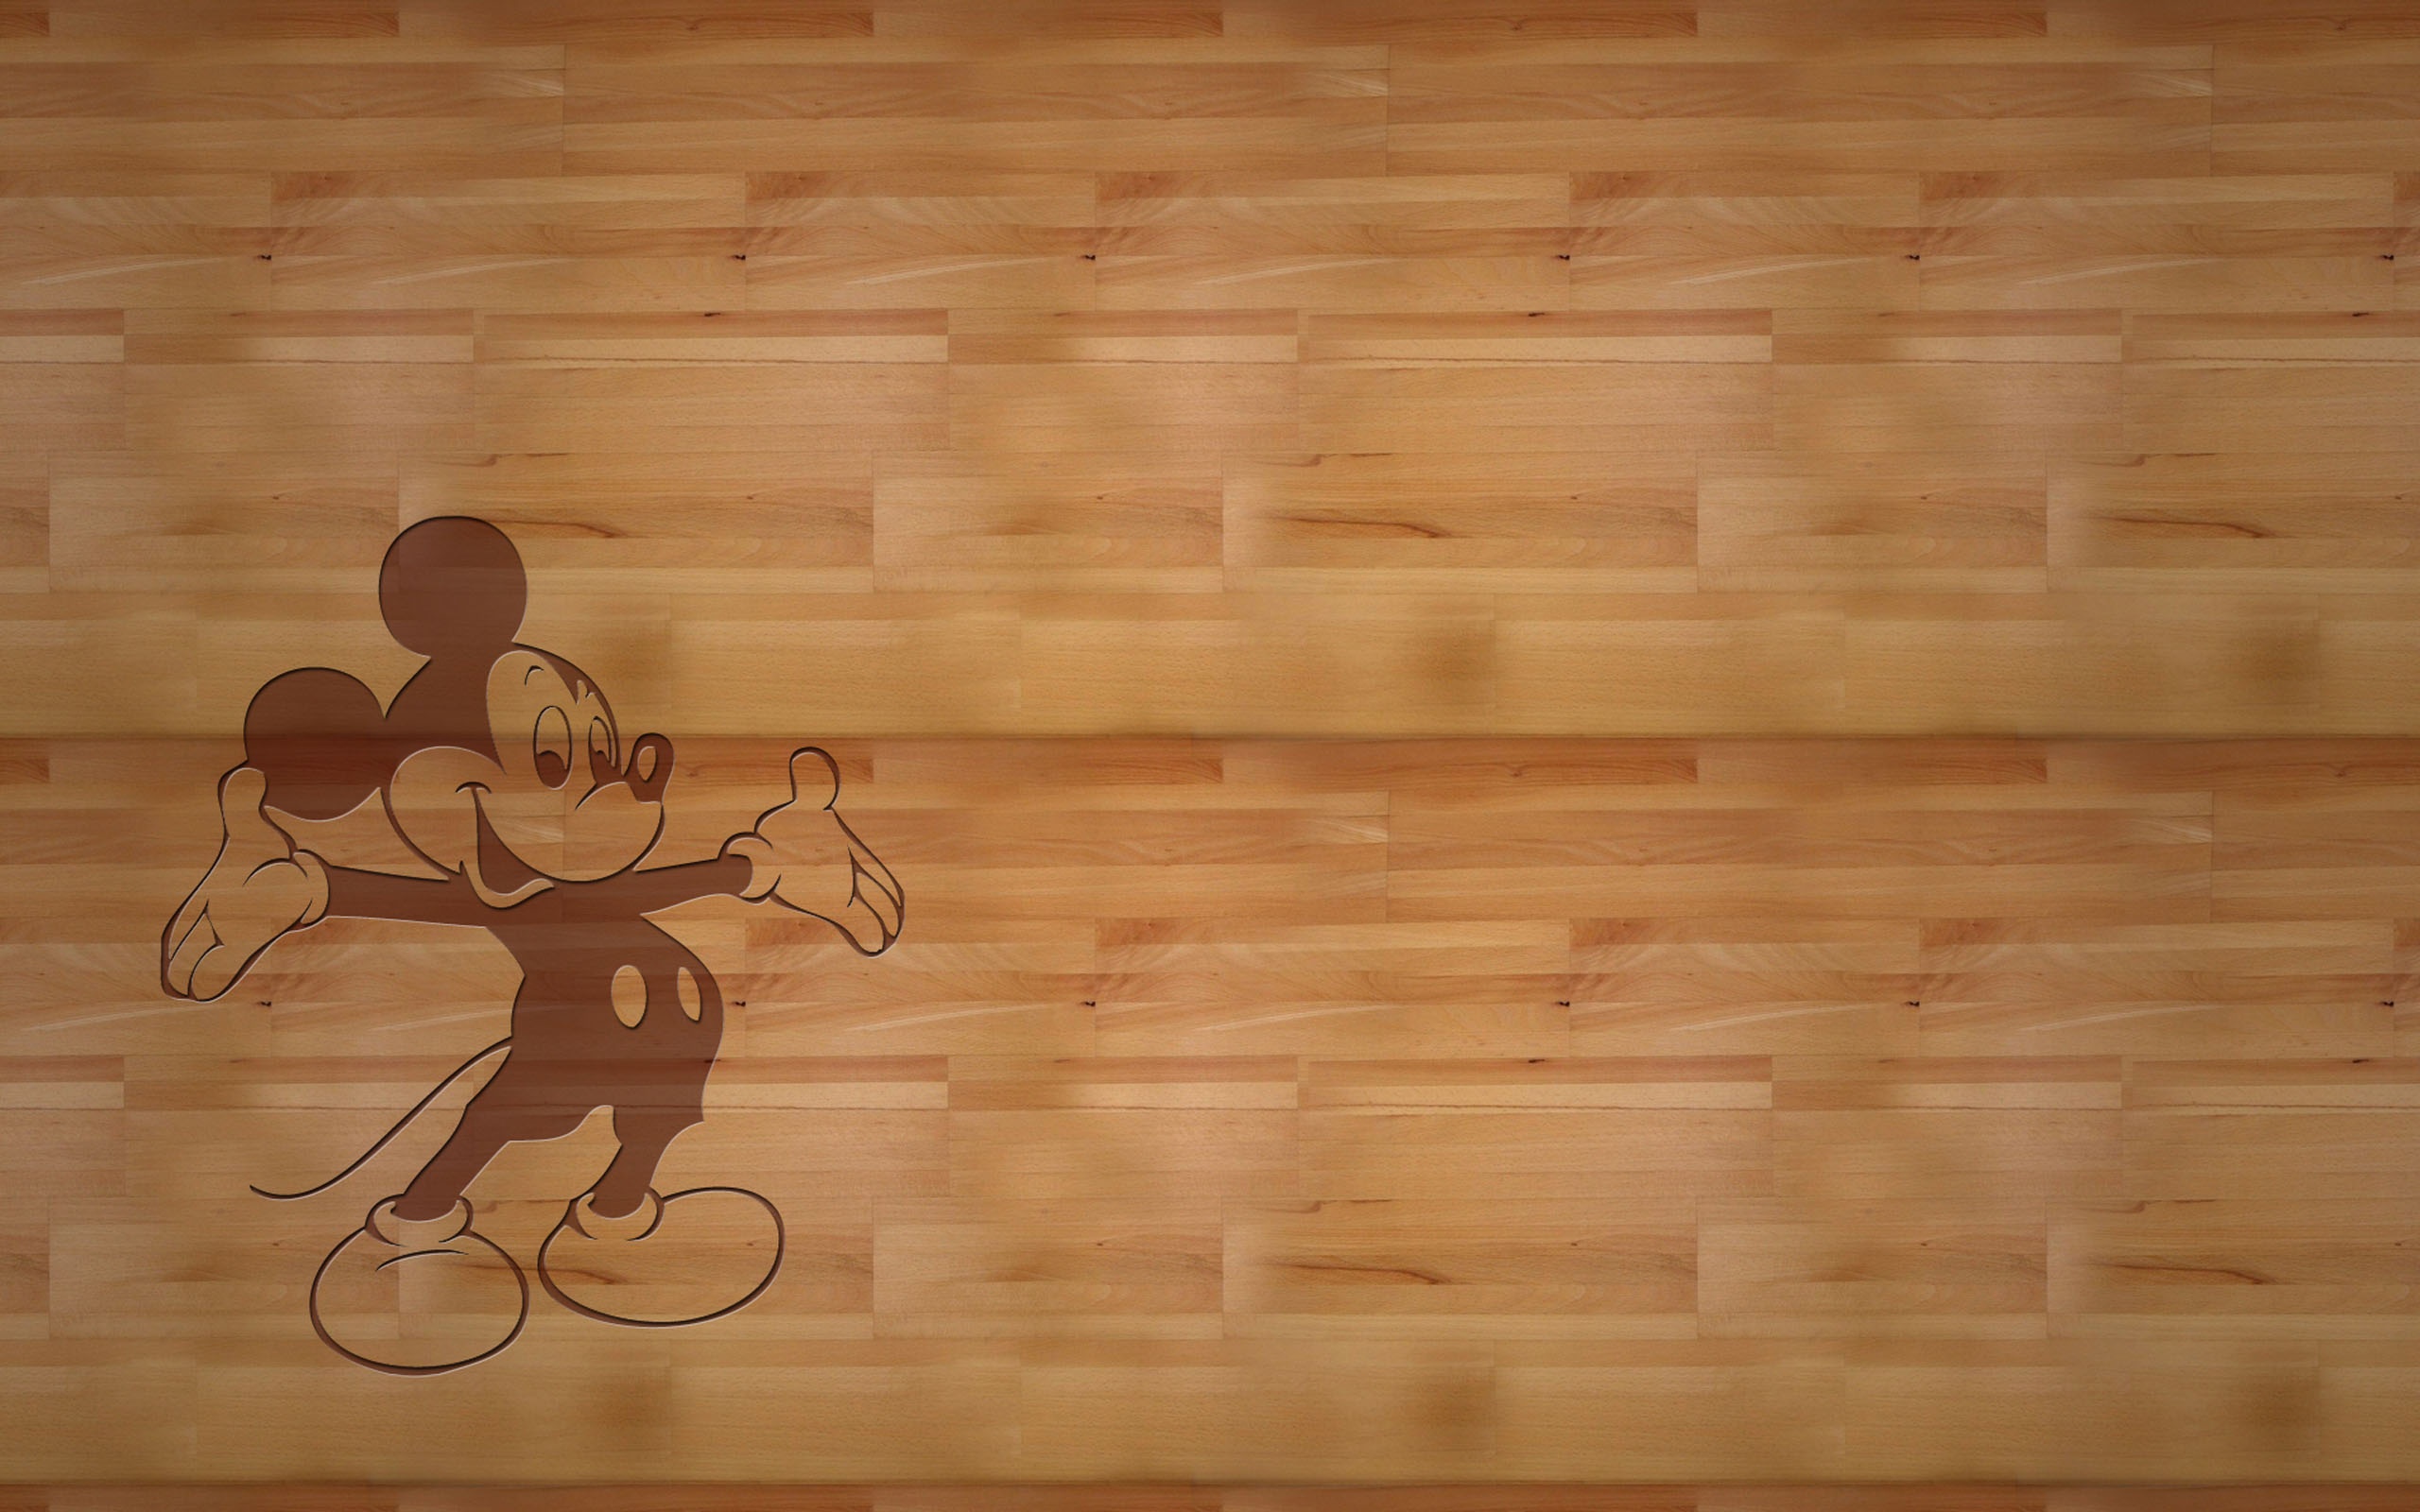 画像 ディズニー ミッキーマウスのpcデスクトップ壁紙 画像 まとめ Mickey Mouse Naver まとめ